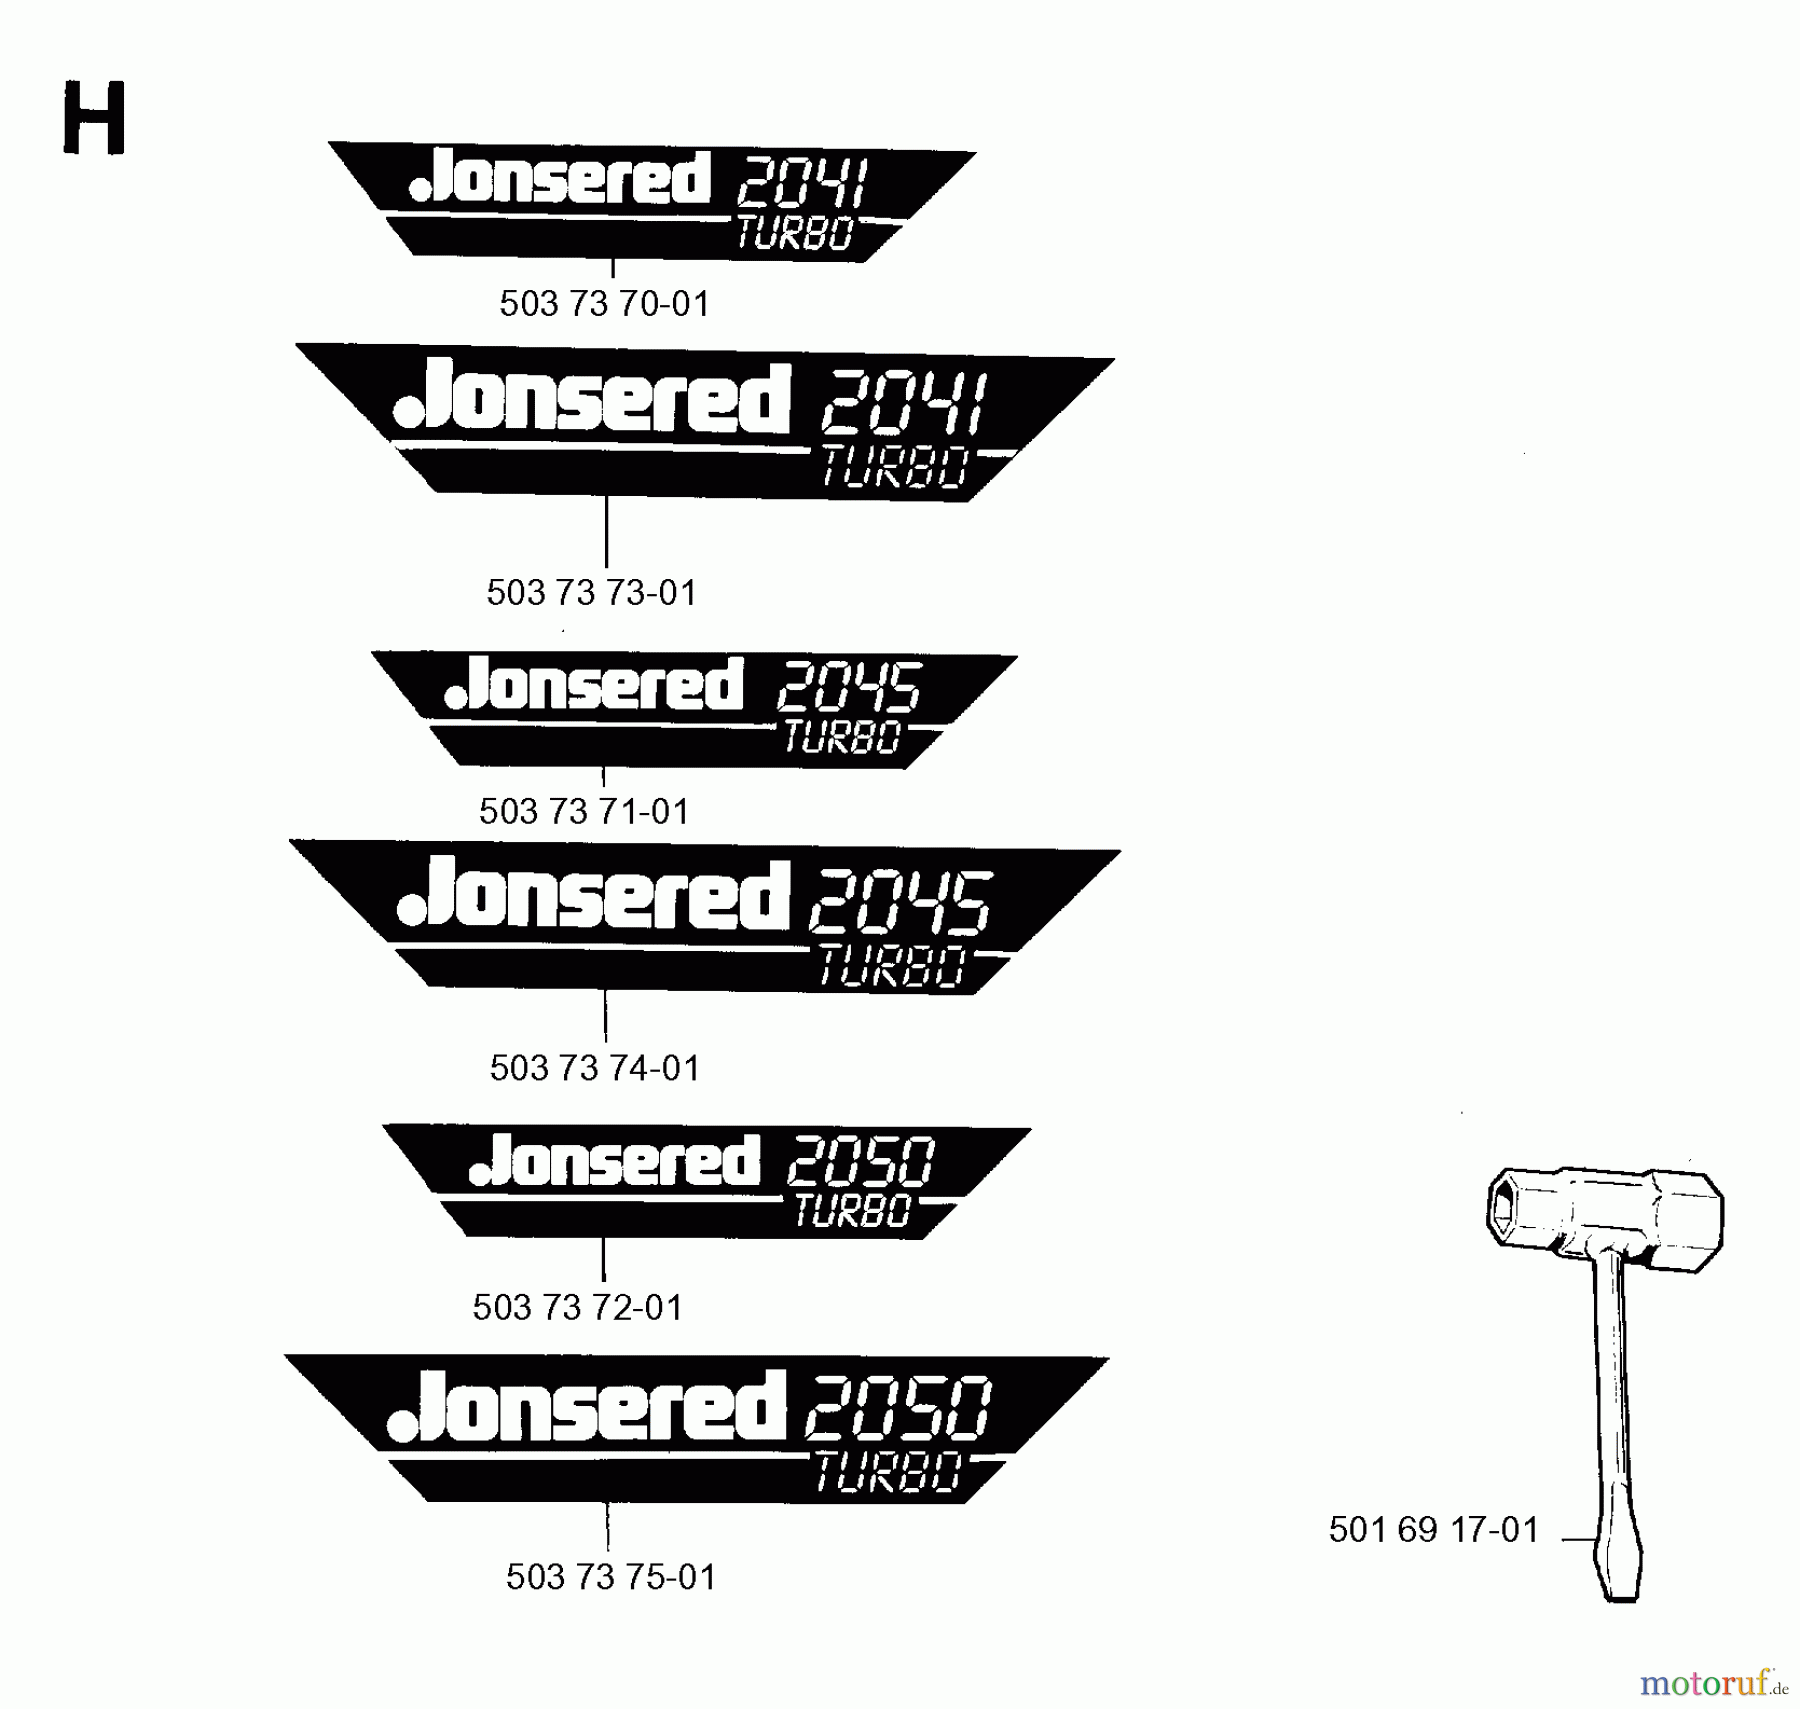  Jonsered Motorsägen 2041 - Jonsered Chainsaw (1996-05) DECALS